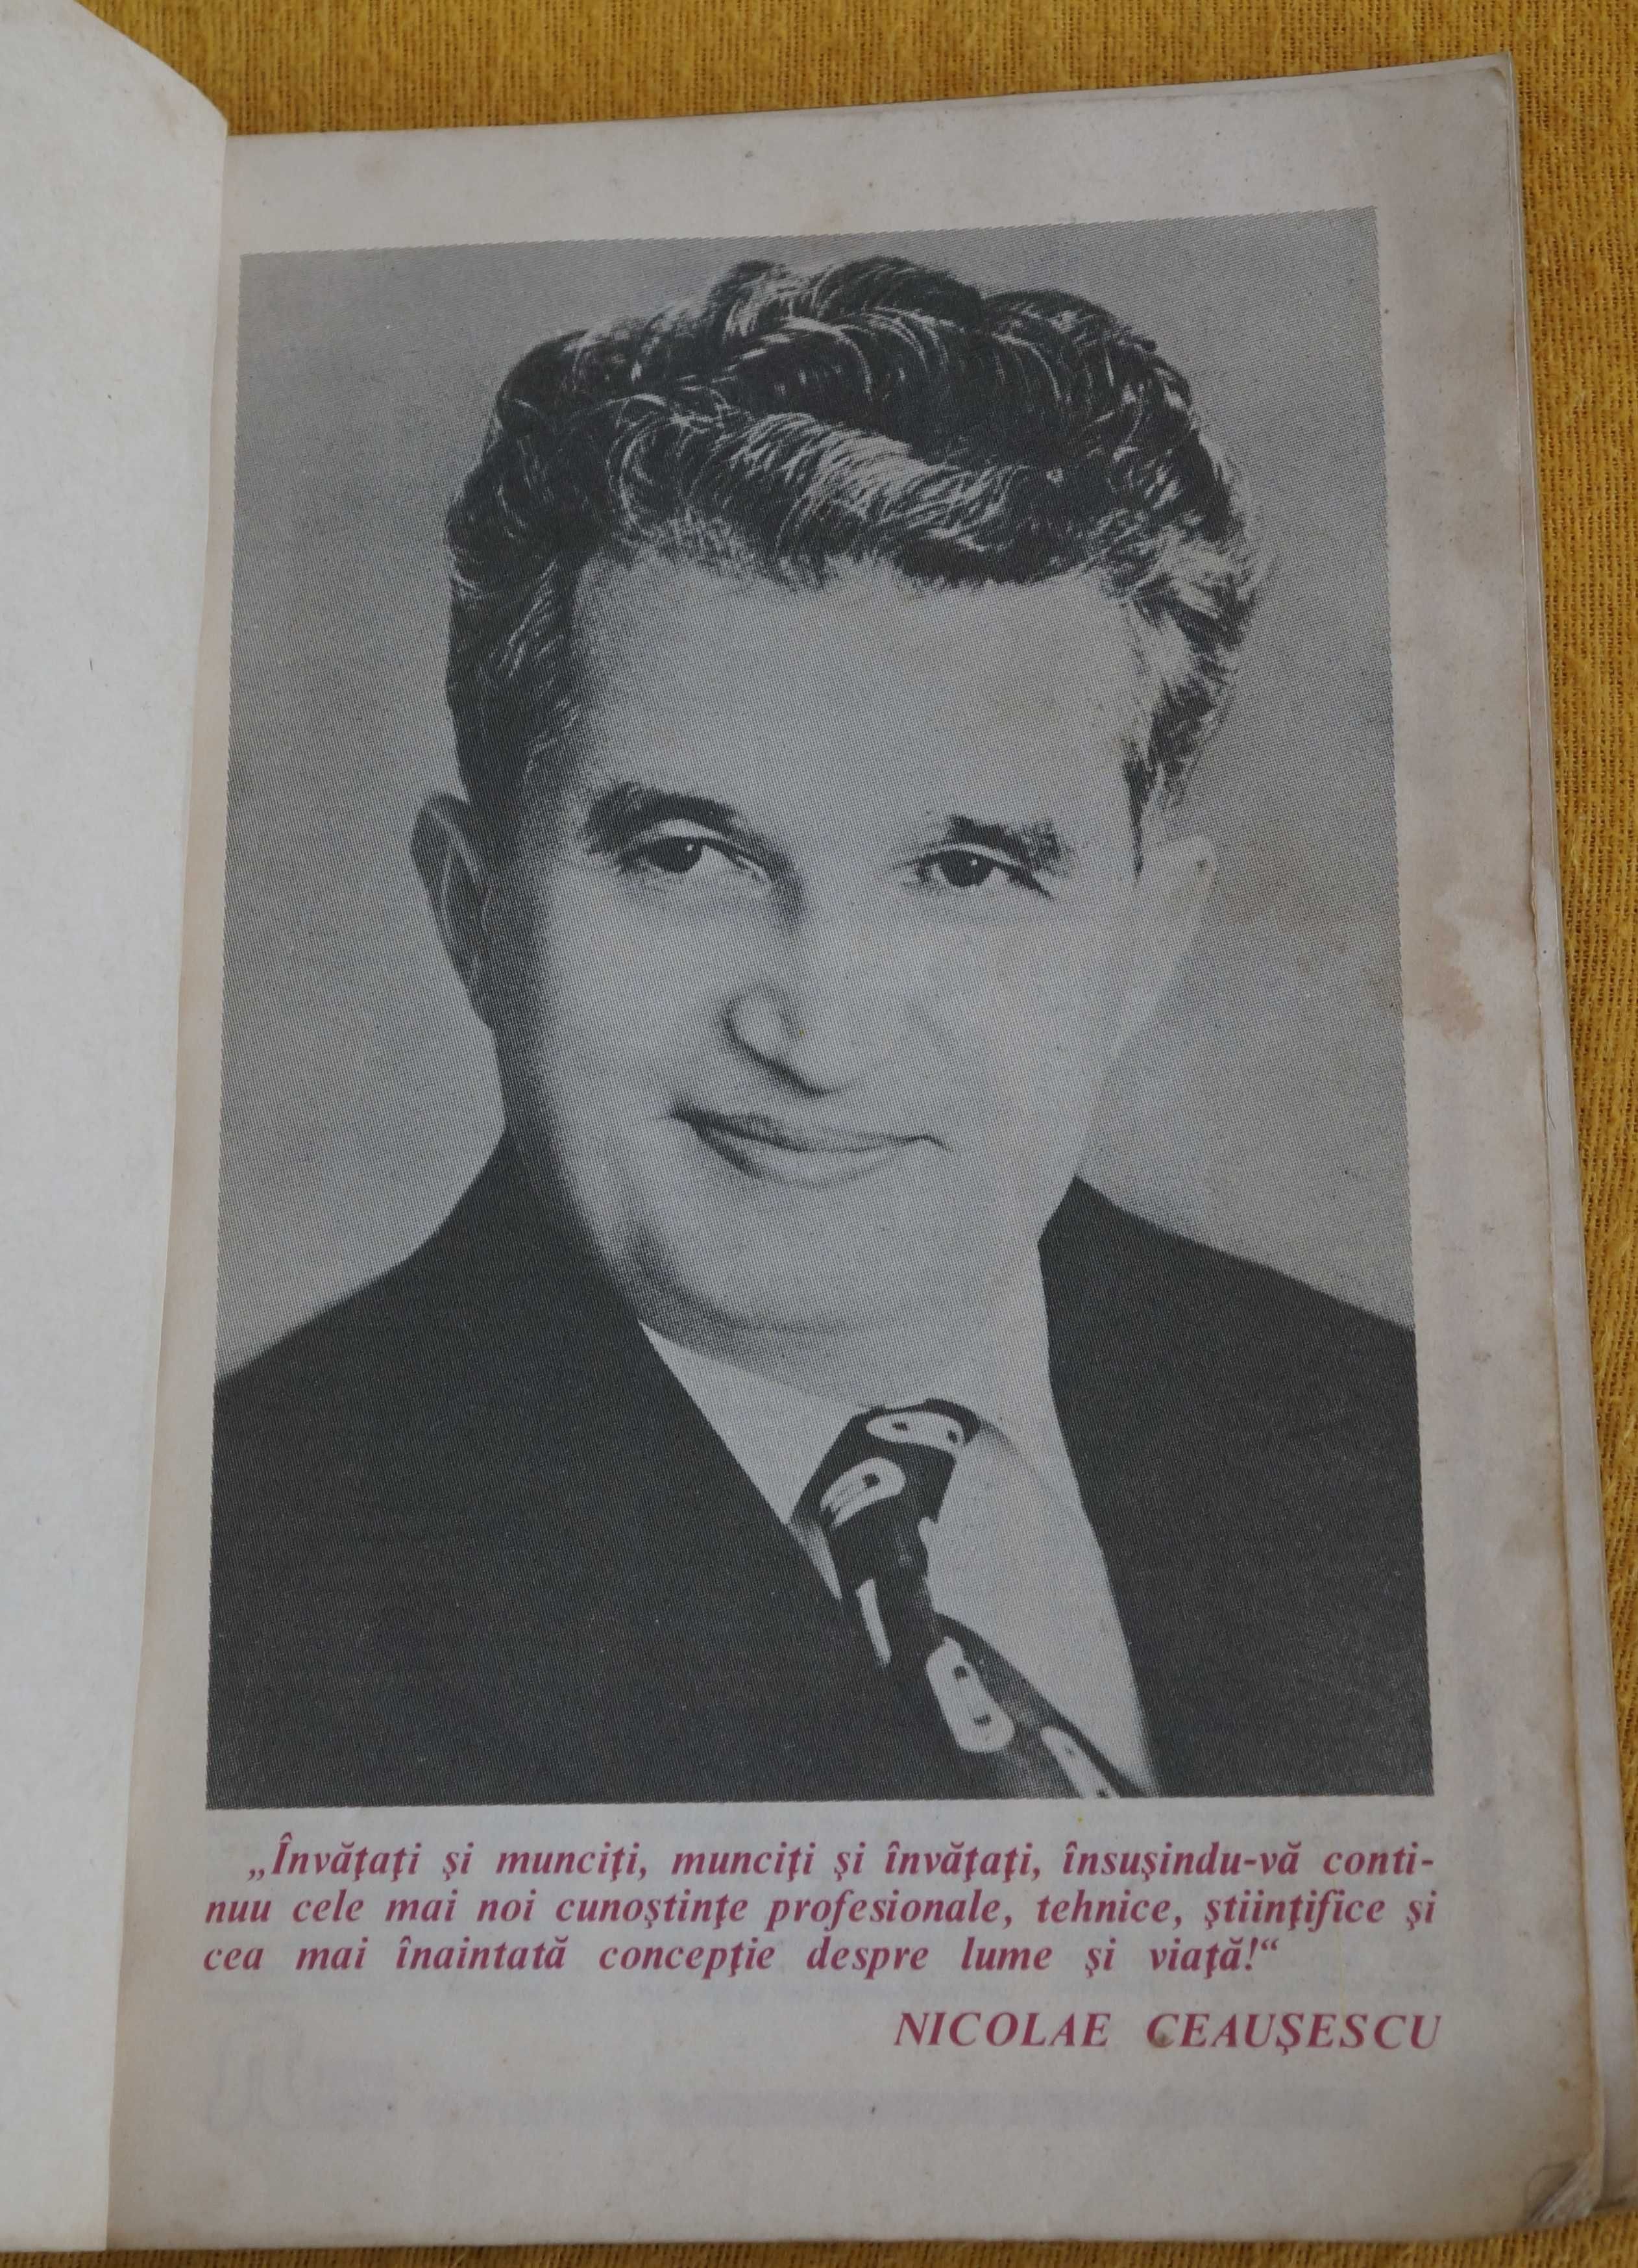 Almanah Stiinta si Tehnica 1988 (Epoca de Aur, Ceausescu, poze obligat